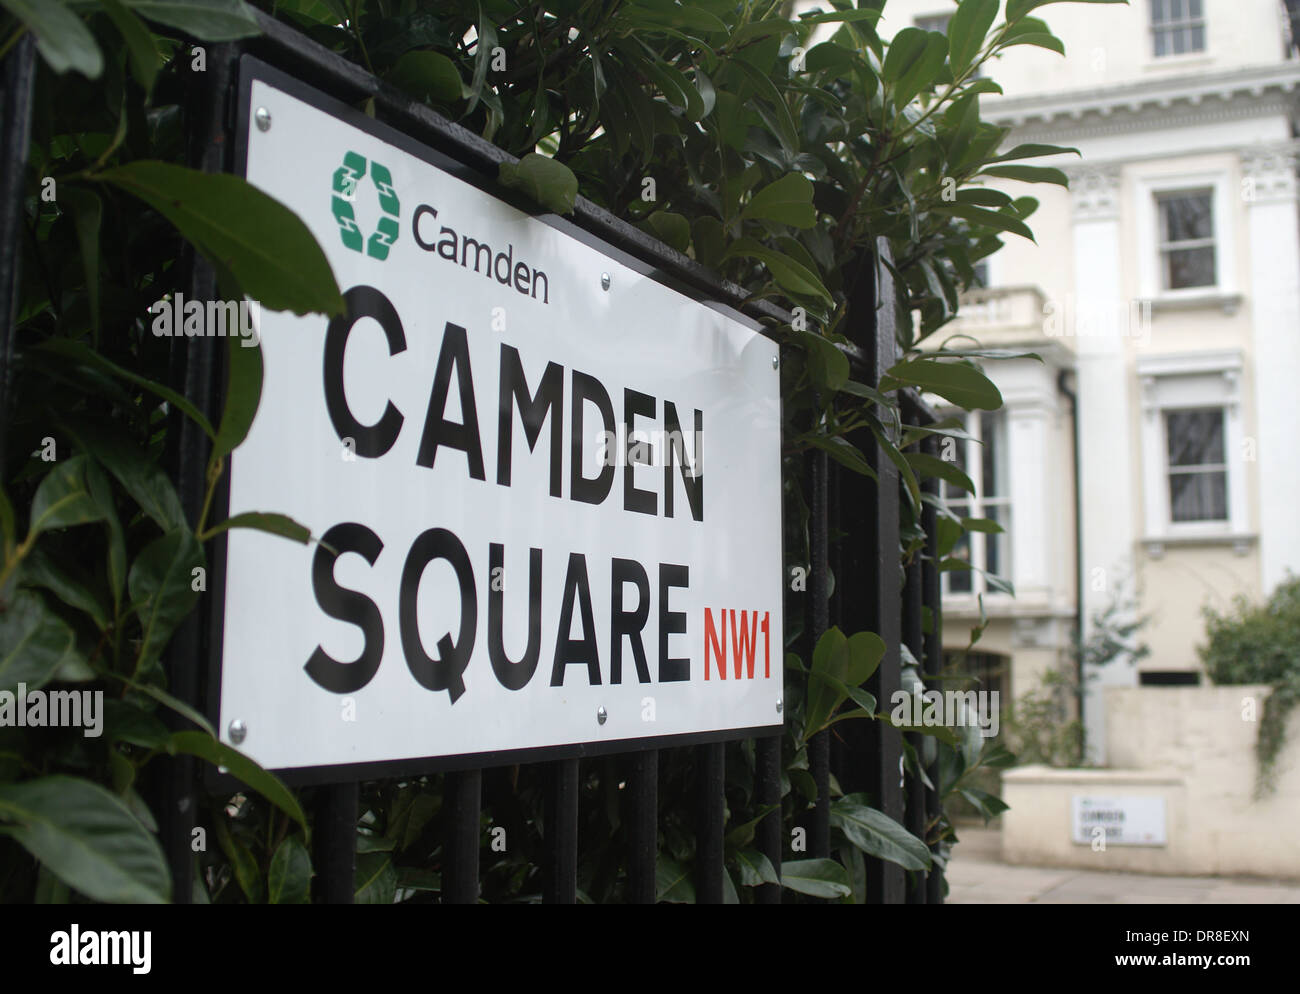 Signo de la calle Camden square NW1 camden casas Foto de stock